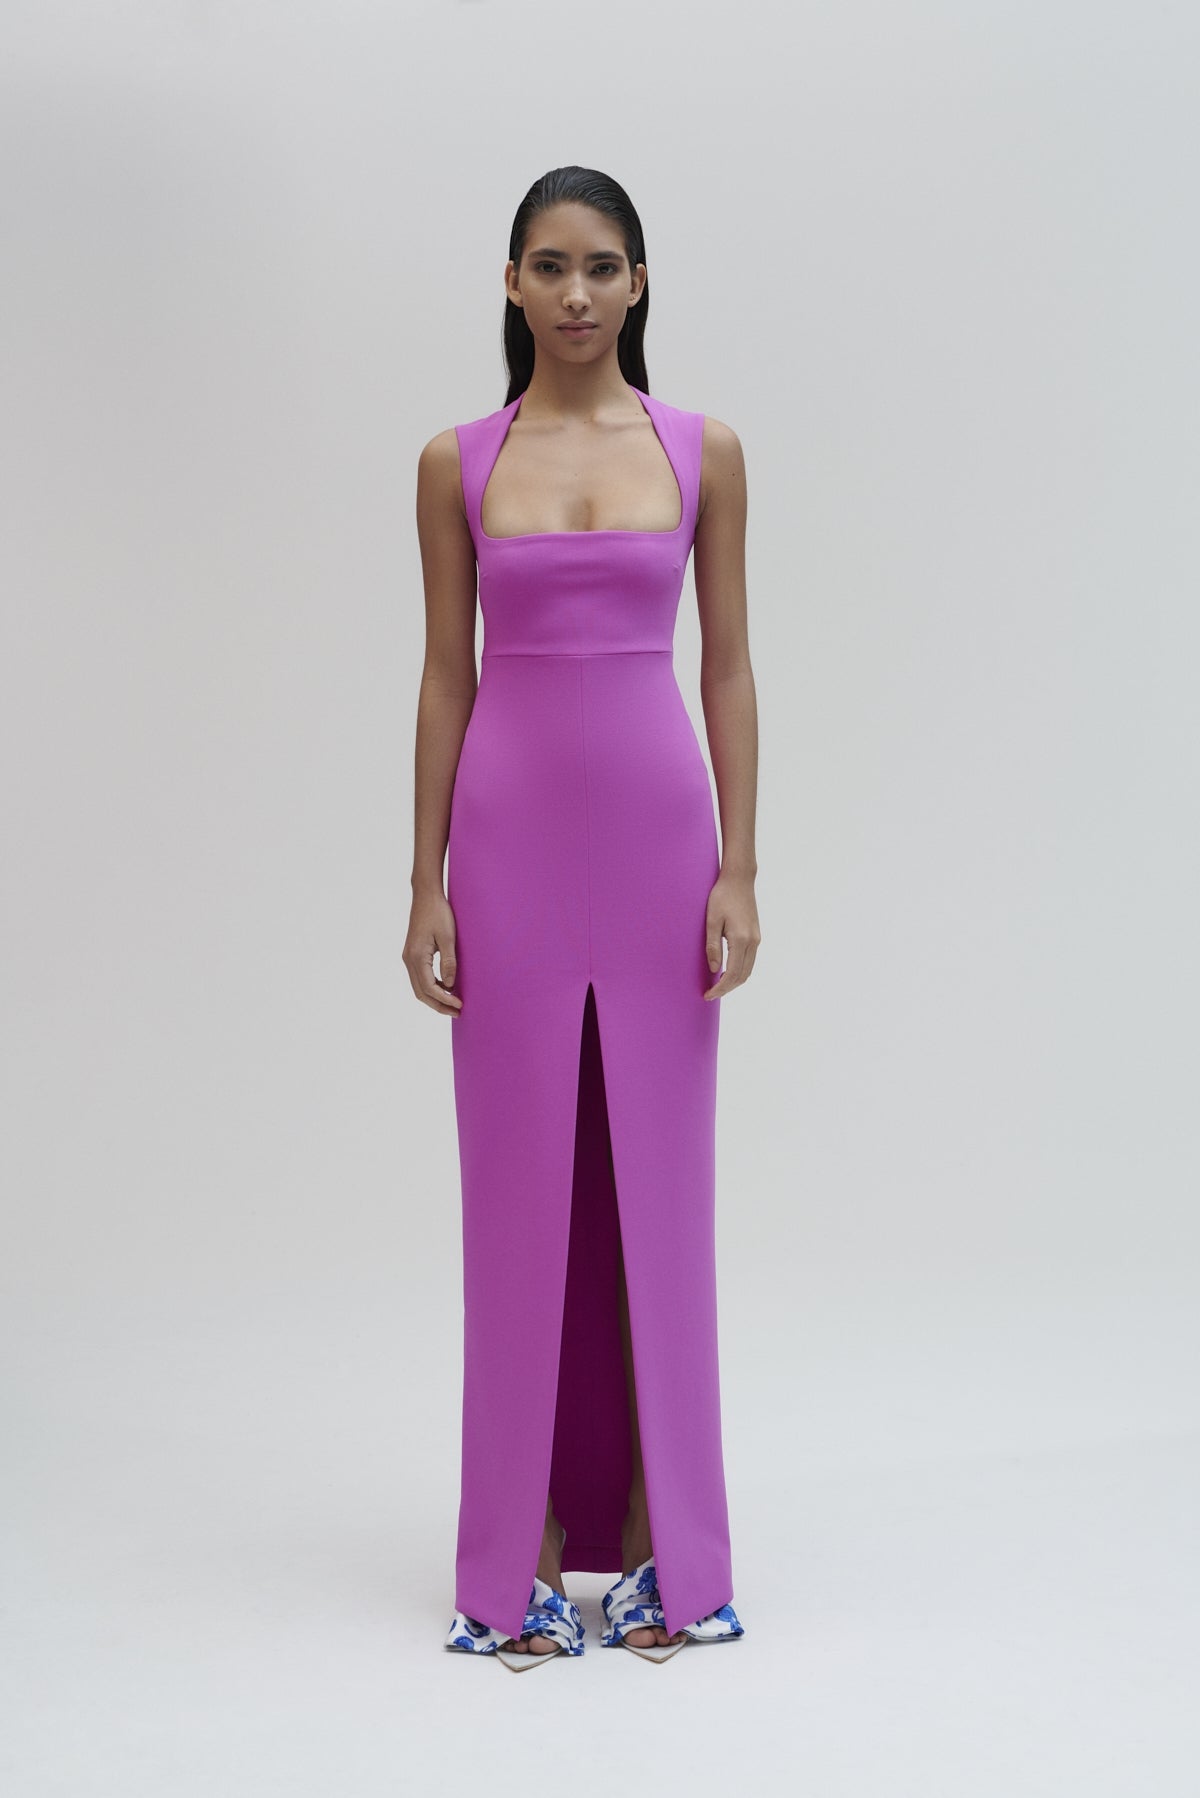 The Sofia Maxi Dress in Bright Purple